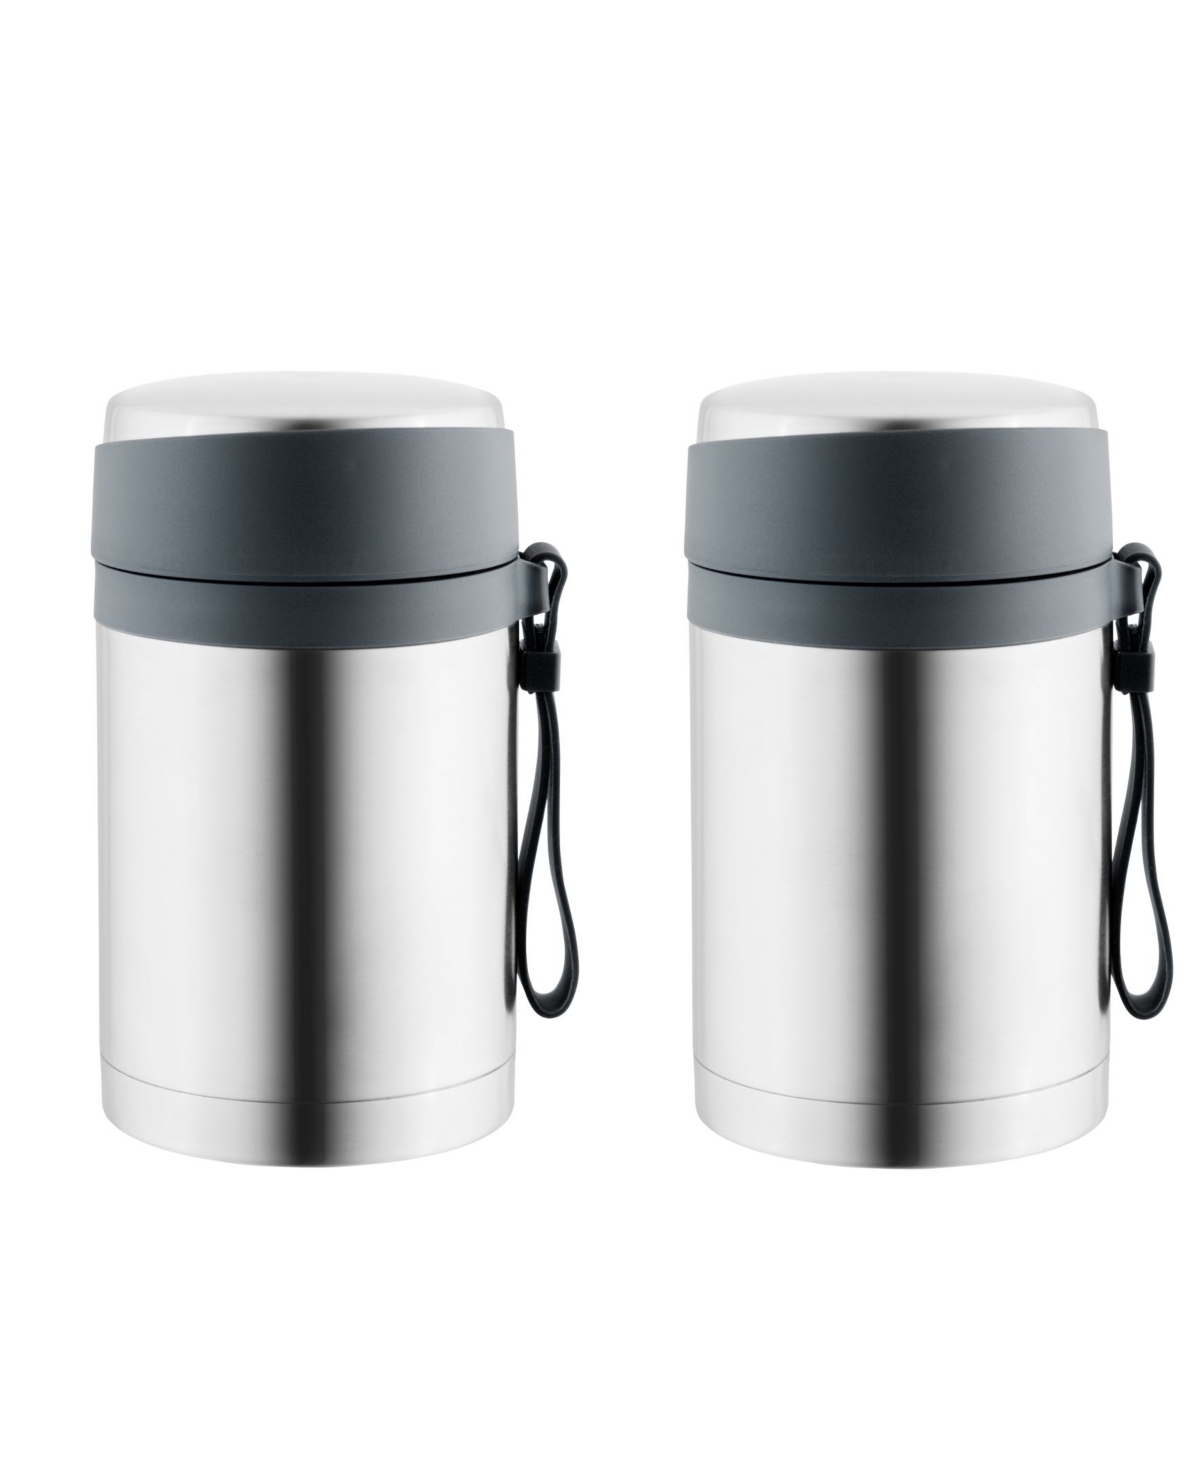 Essentials 0.9 quart Food Container, Set of 2 - Silver-Tone